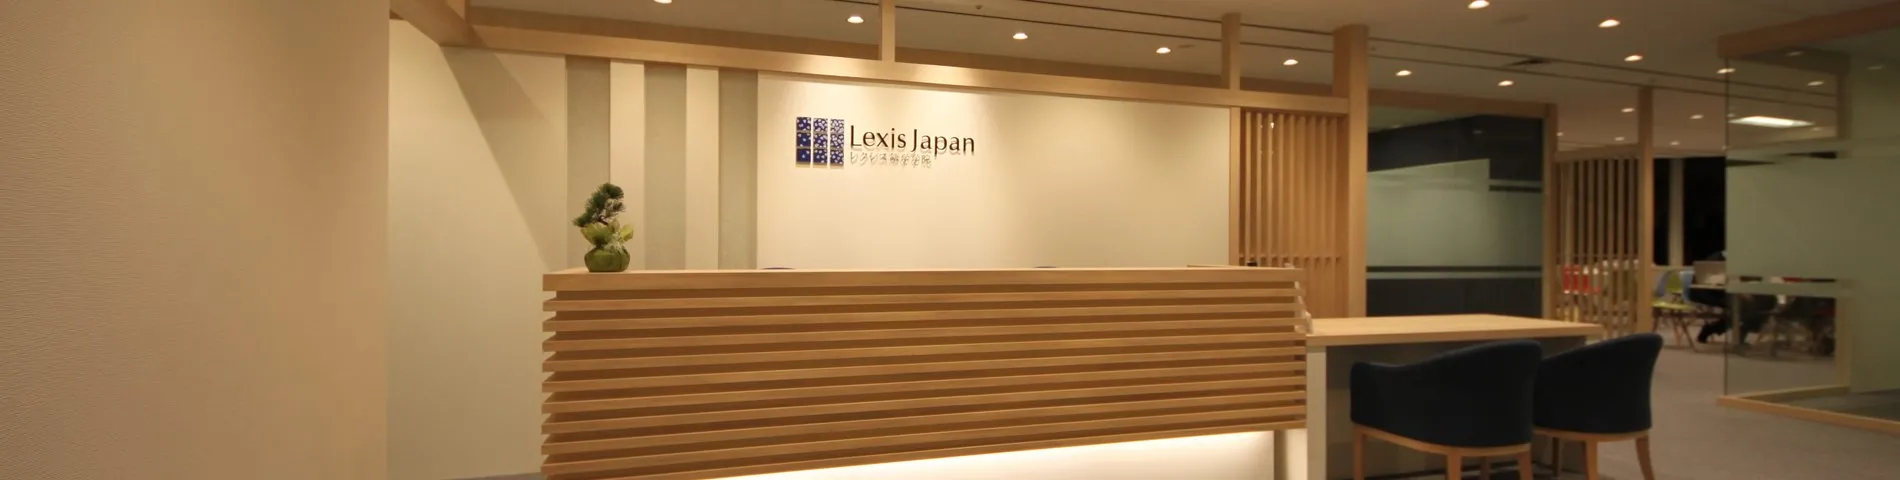 Lexis Japan 사진 1